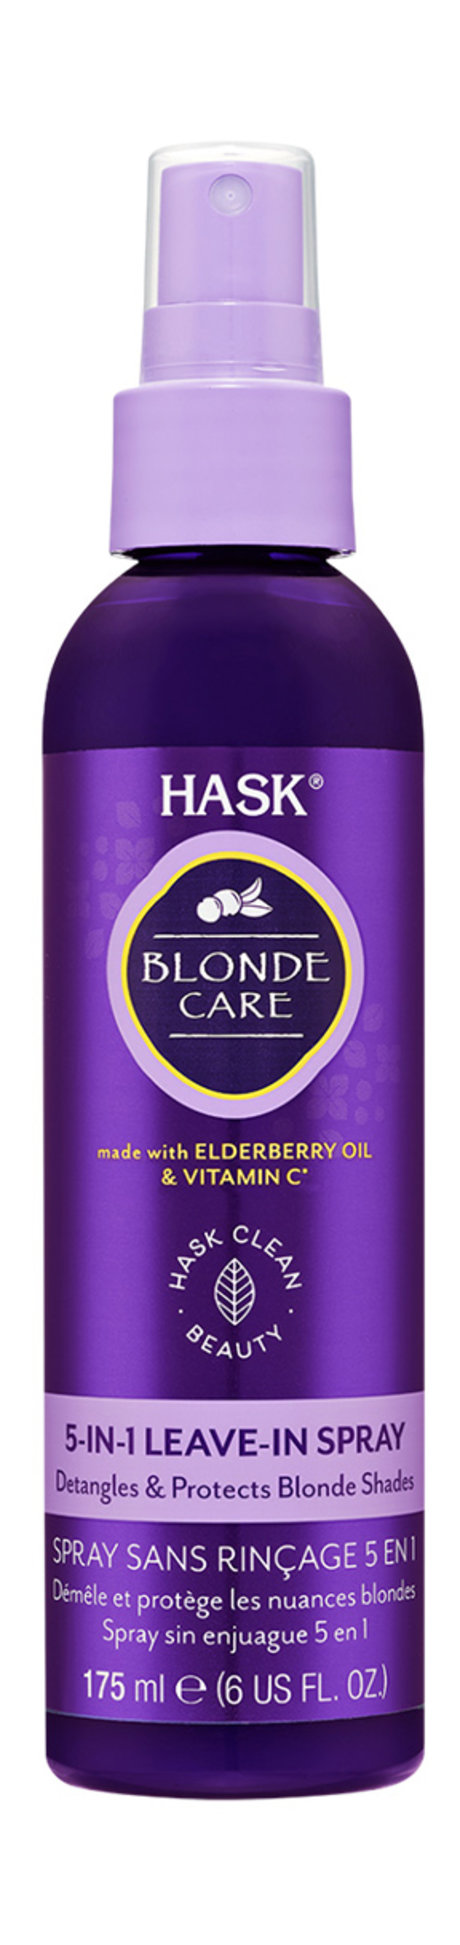 hask blonde care 5-in-1 leave-in spray